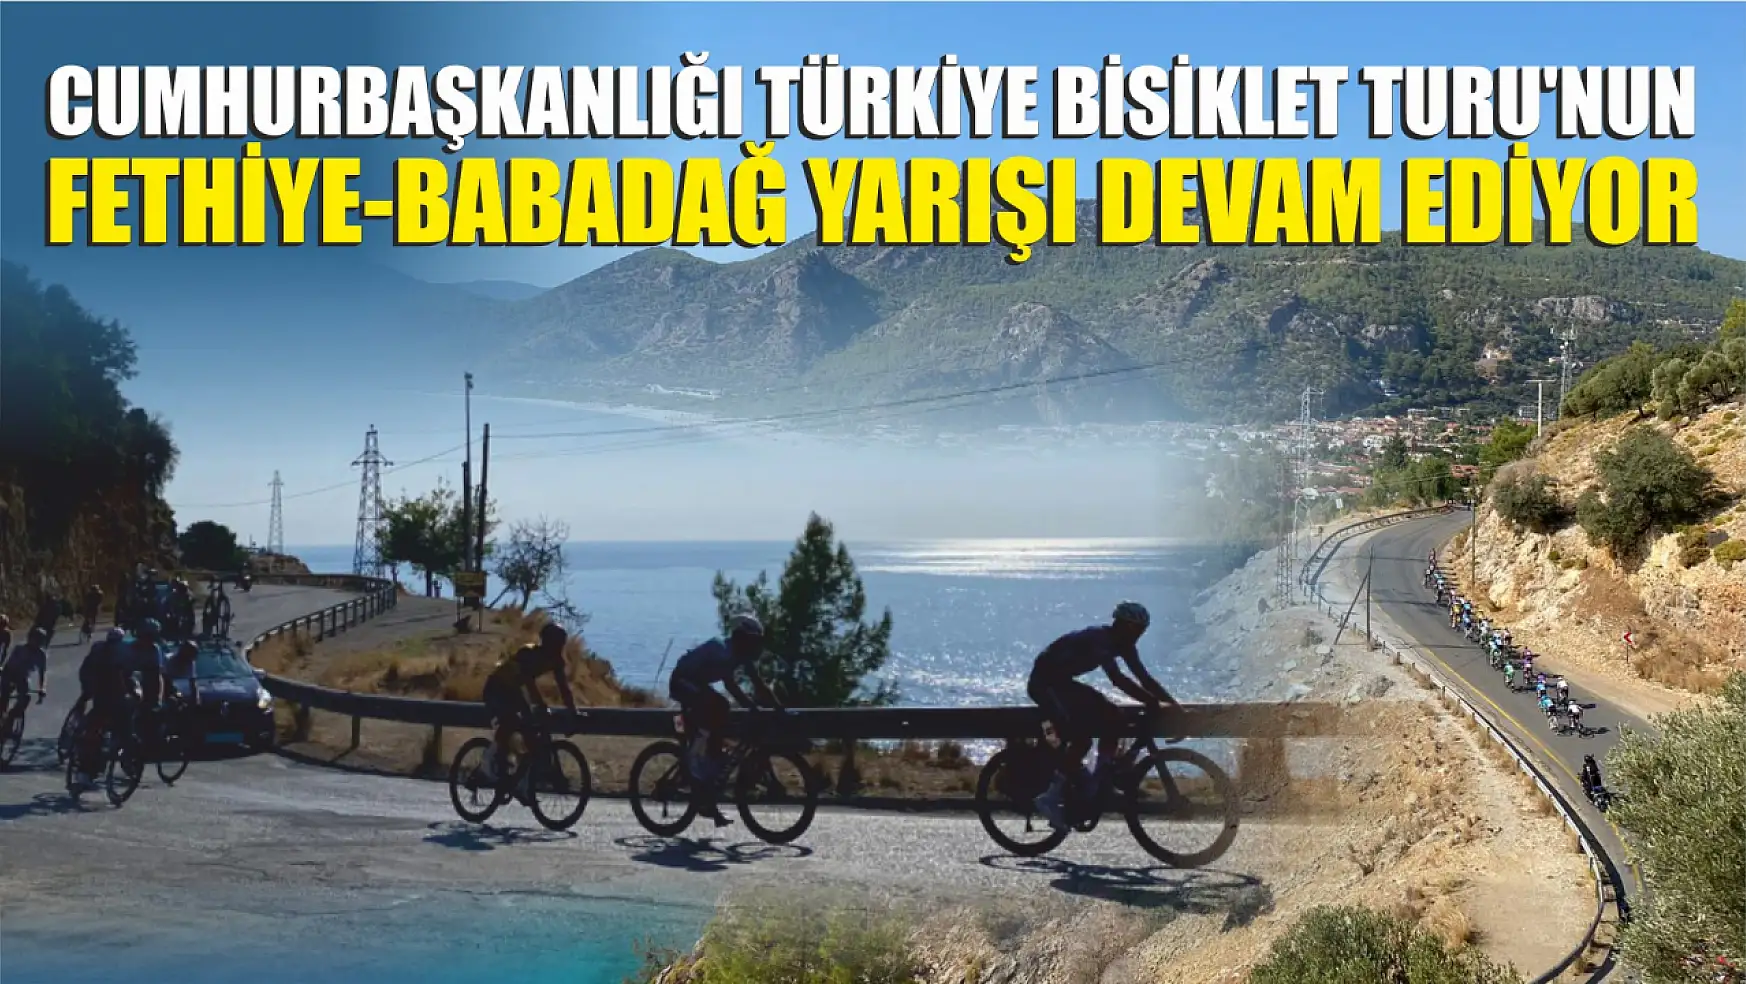 Cumhurbaşkanlığı Türkiye Bisiklet Turu'nun Fethiye-Babadağ Yarışı Devam Ediyor